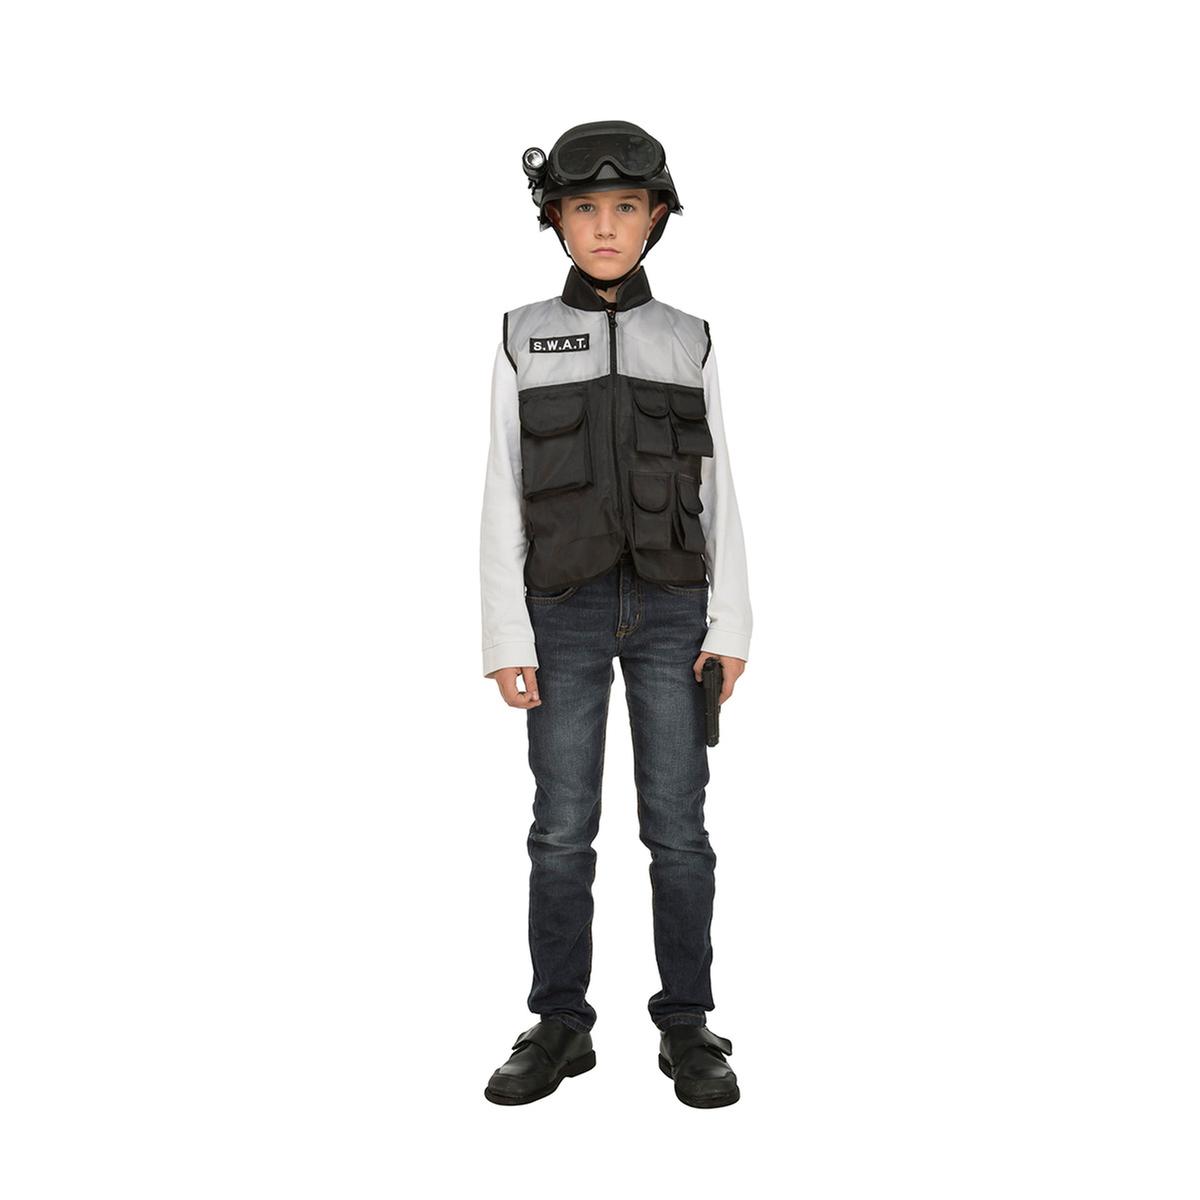 Disfraz Policia Niño 3-5 Años